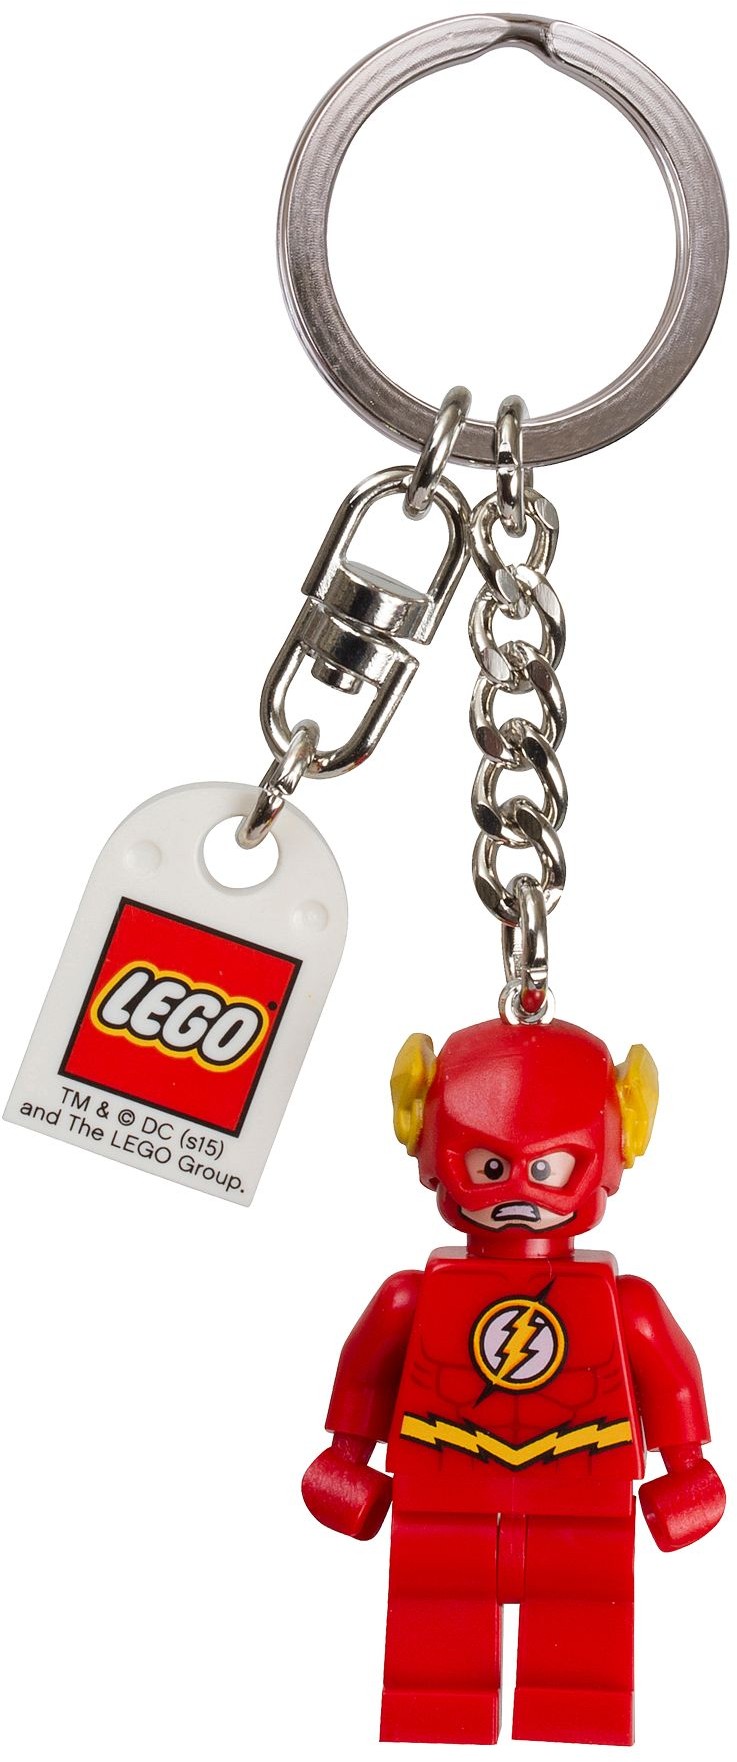 The HULK Key Chain LEGO Super Heroes Key Ring